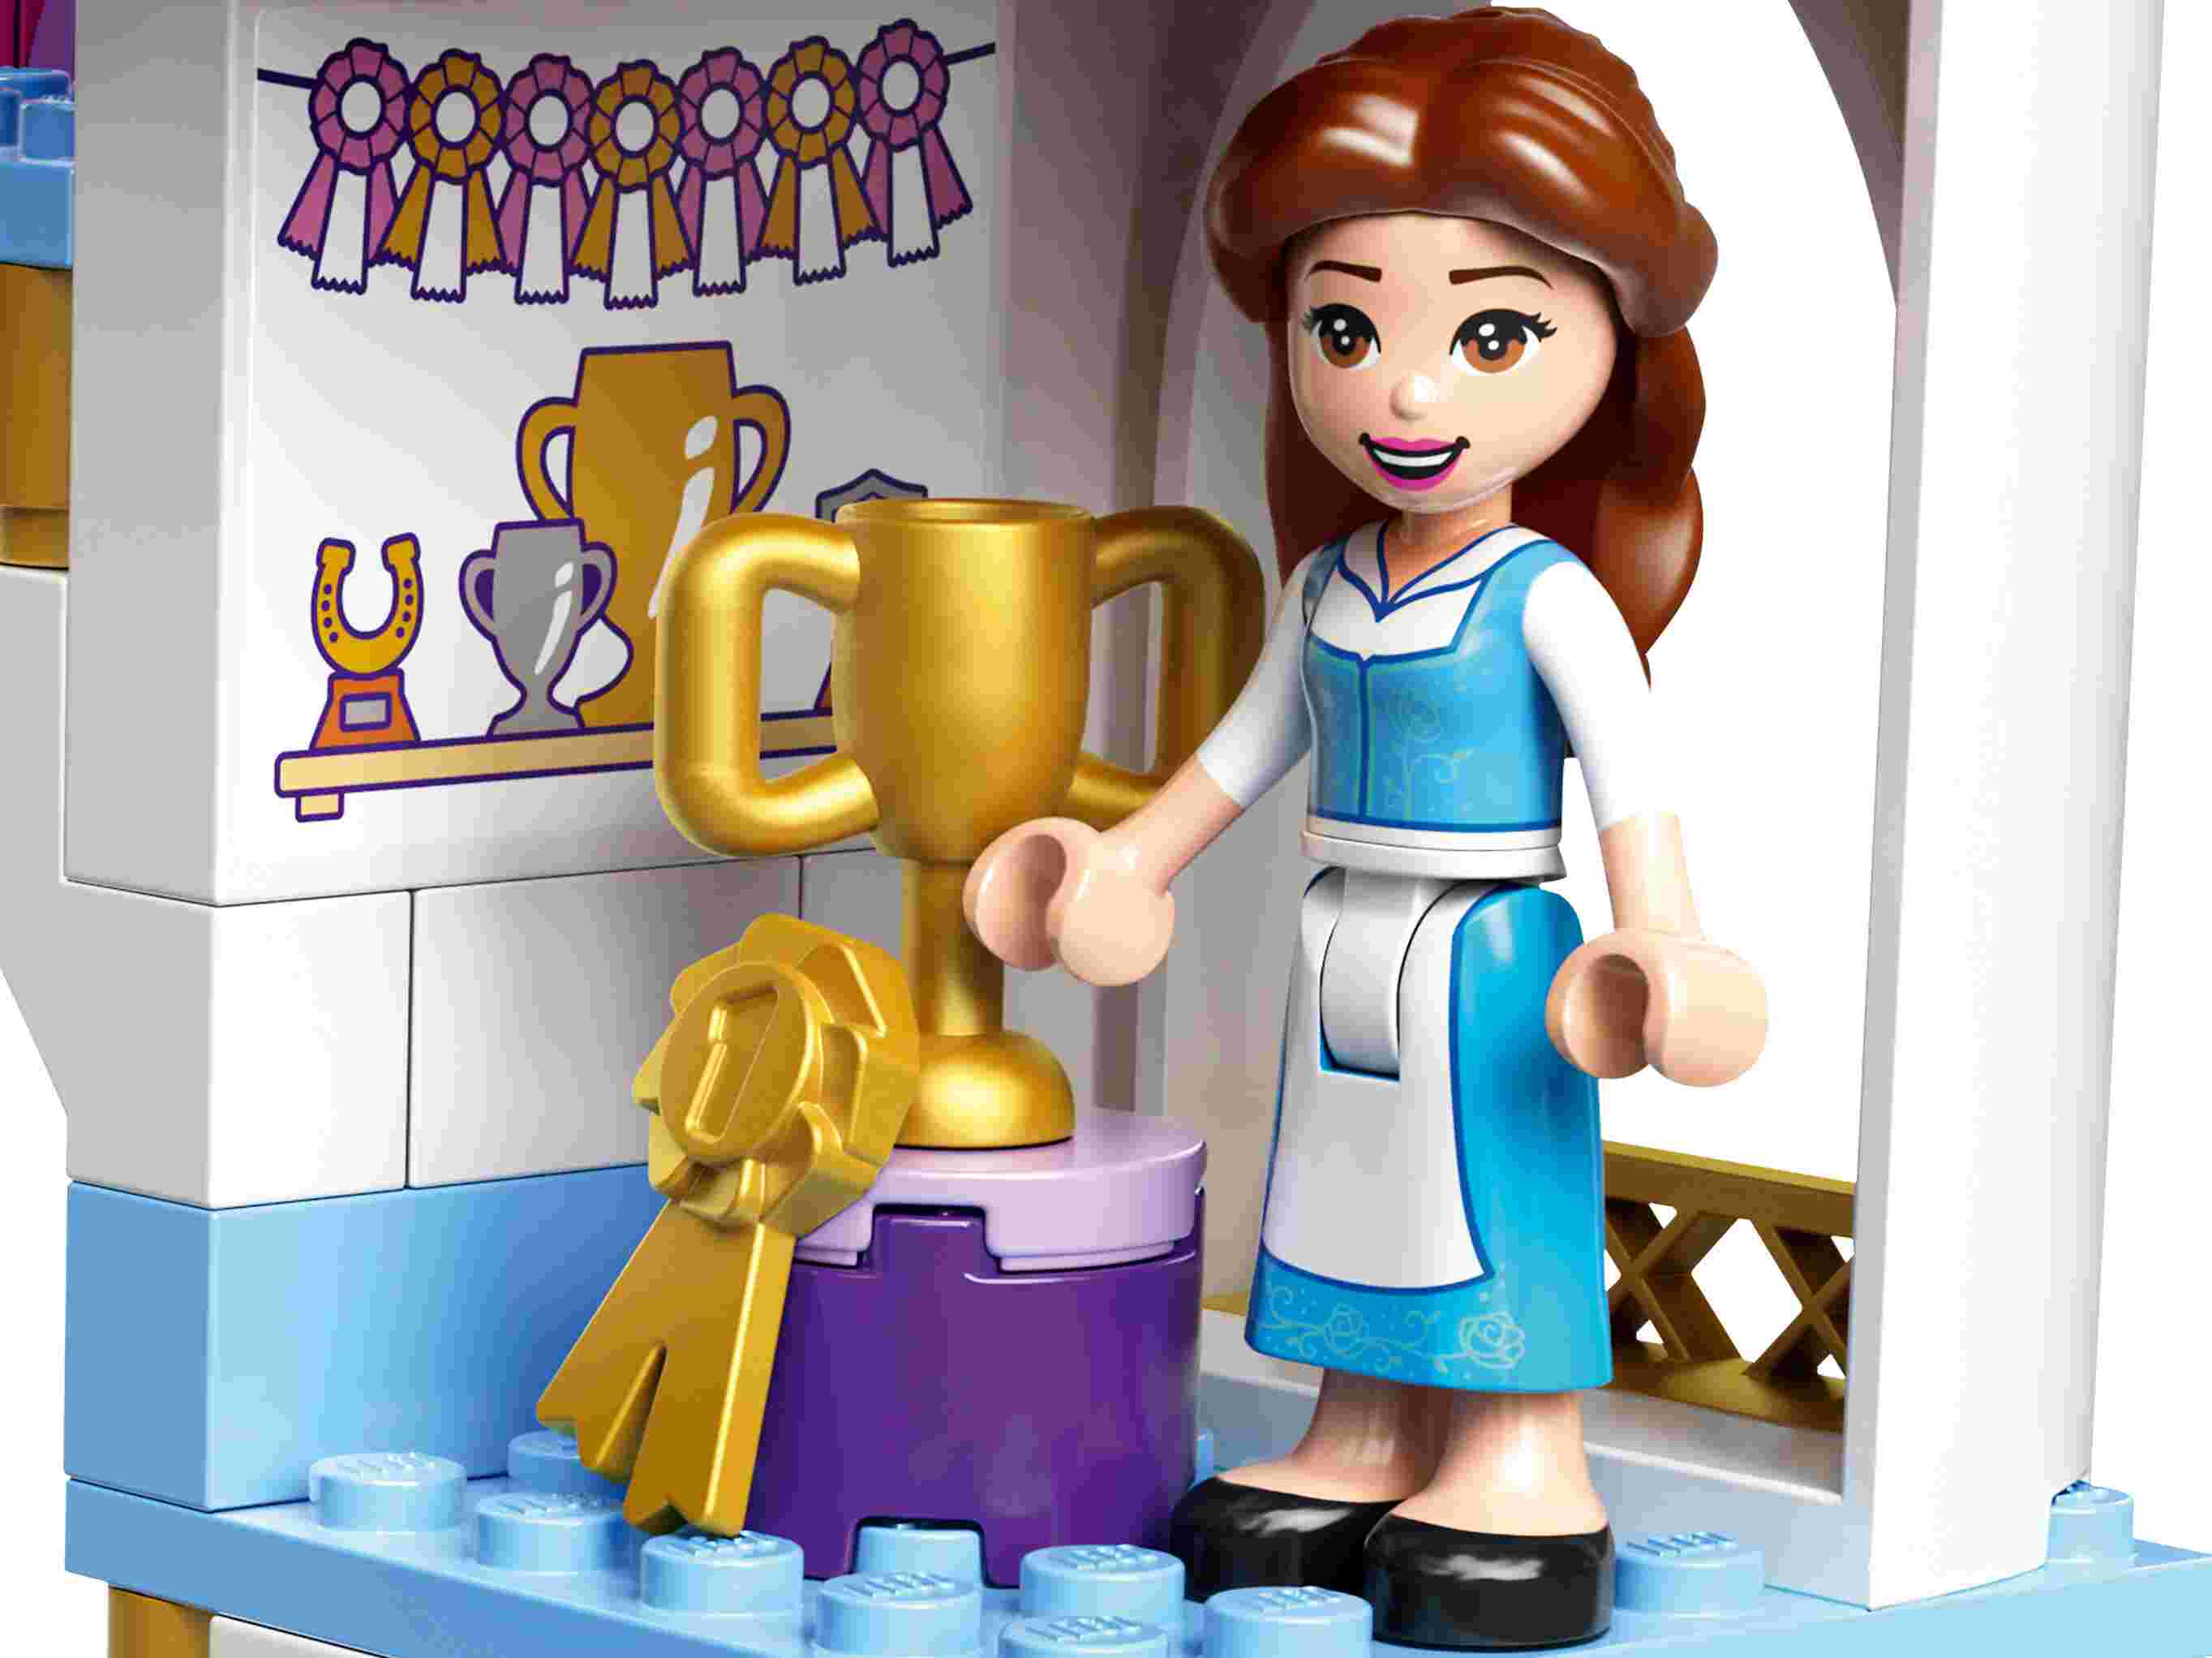 LEGO 43195 Disney Princess Belles und Rapunzels königliche Ställe, mit Pferden